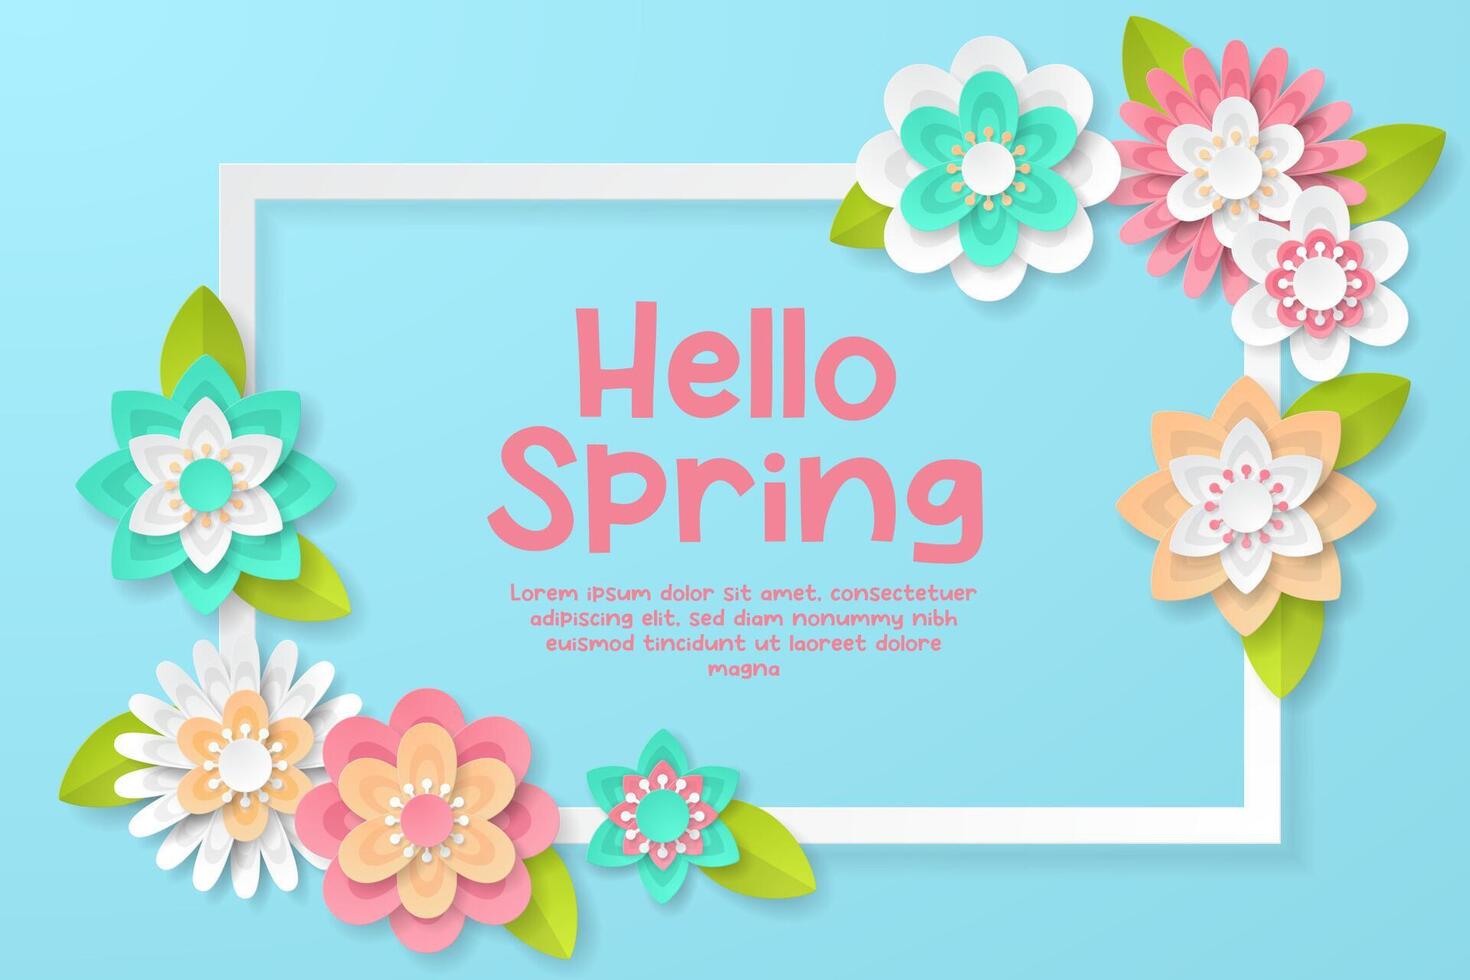 Frühling Hintergrund Vorlage mit schön bunt Blumen. vektor